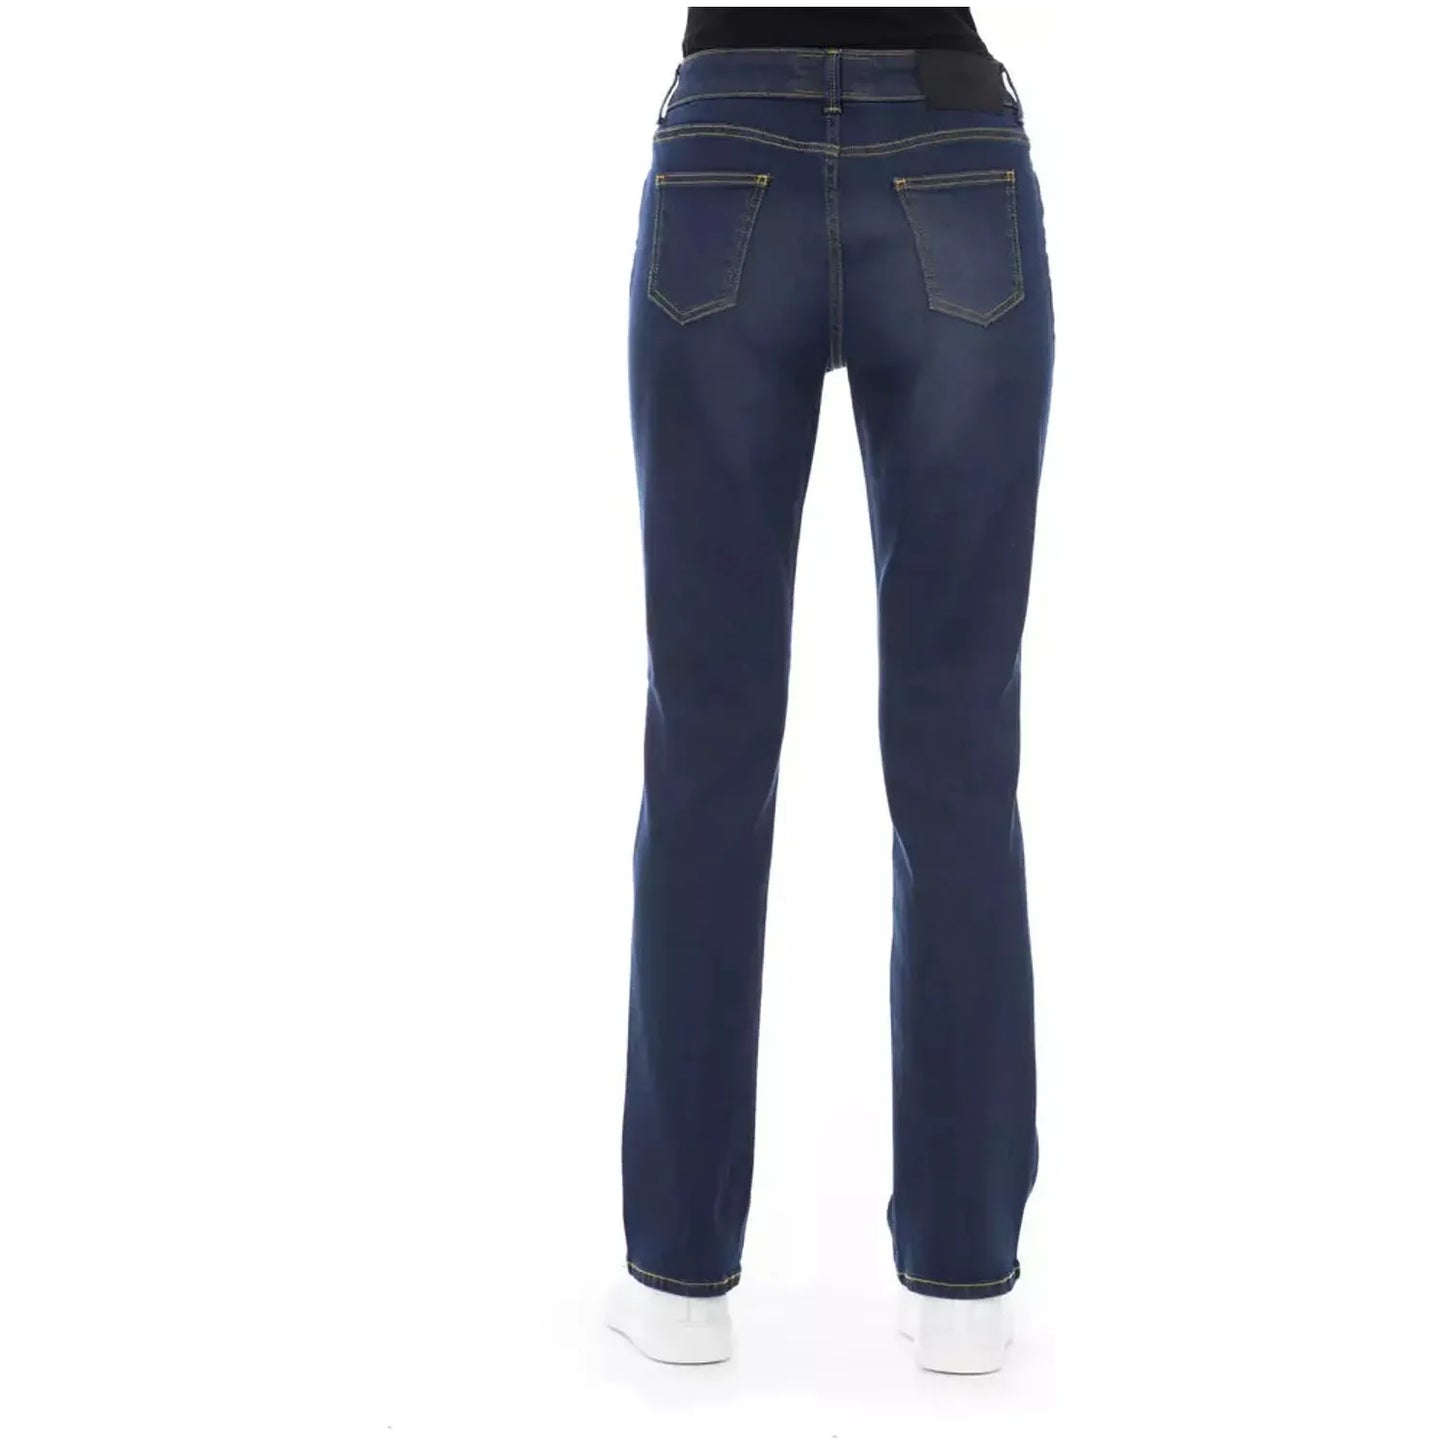 Baldinini Trend Chic Tricolor Pocket Jeans blue-cotton-jeans-pant-67 product-23113-2101745786-18-60a8601a-729.webp